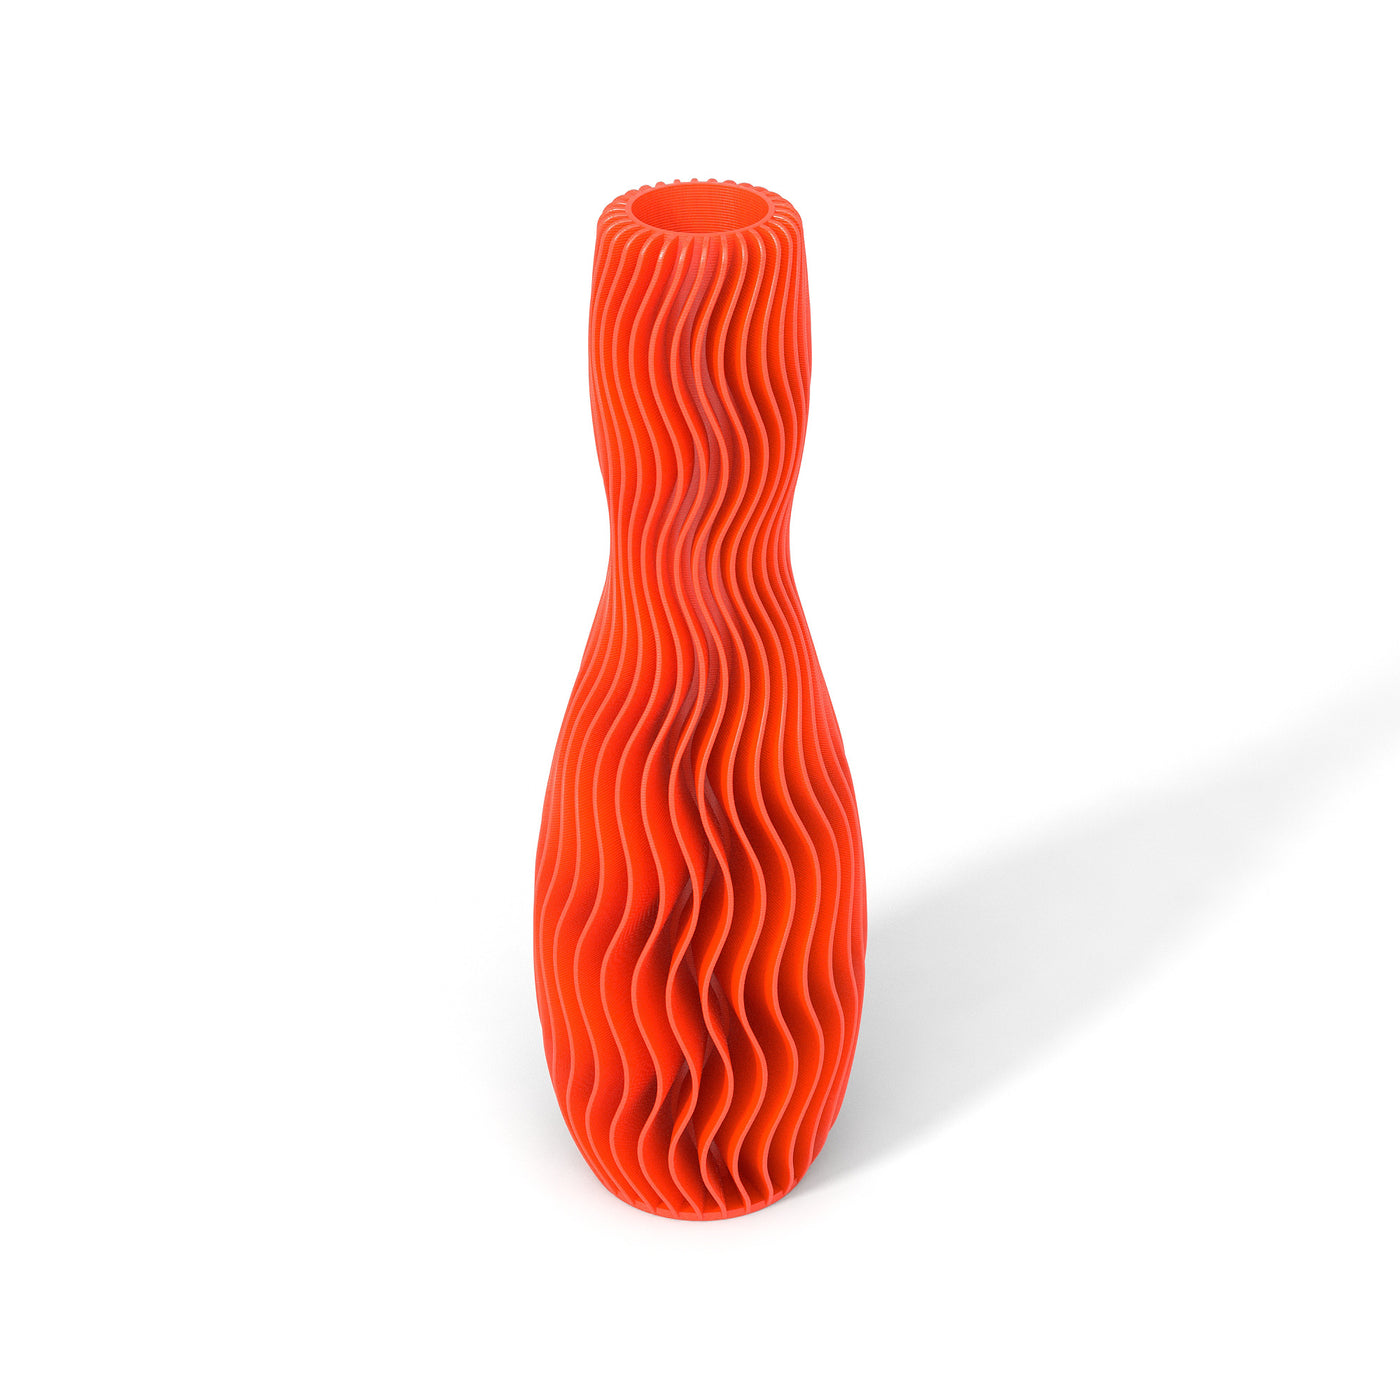 Oranžová designová váza 3D print WAVE 4